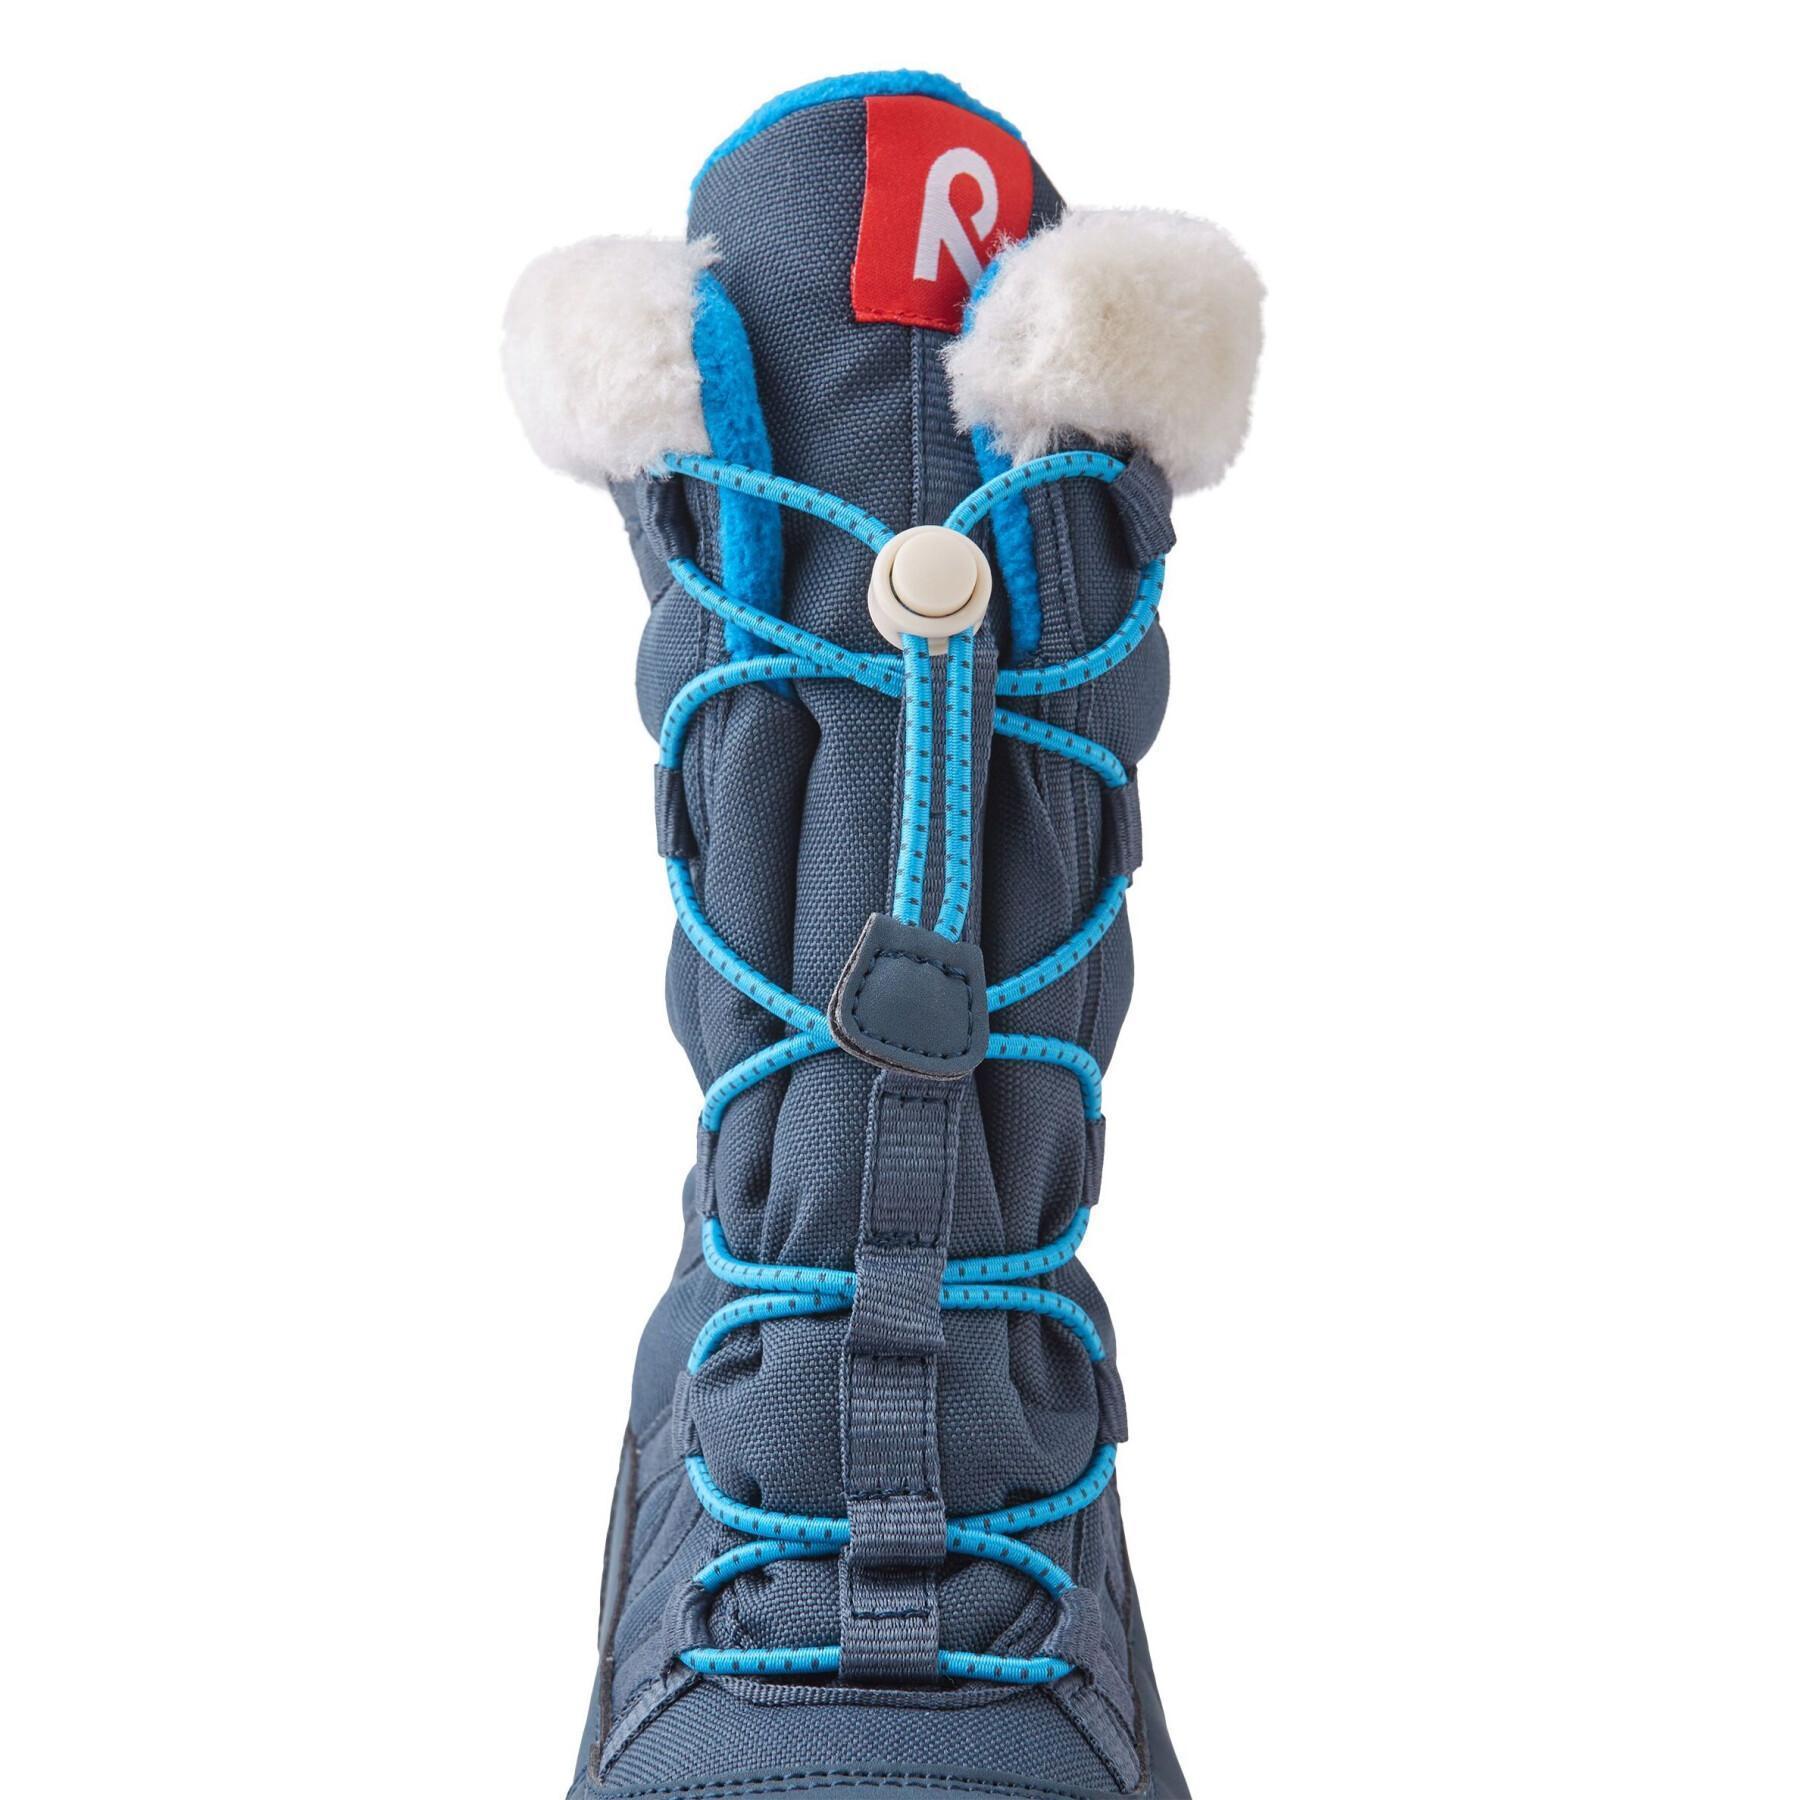 Children's winter boots Reima Samojedi